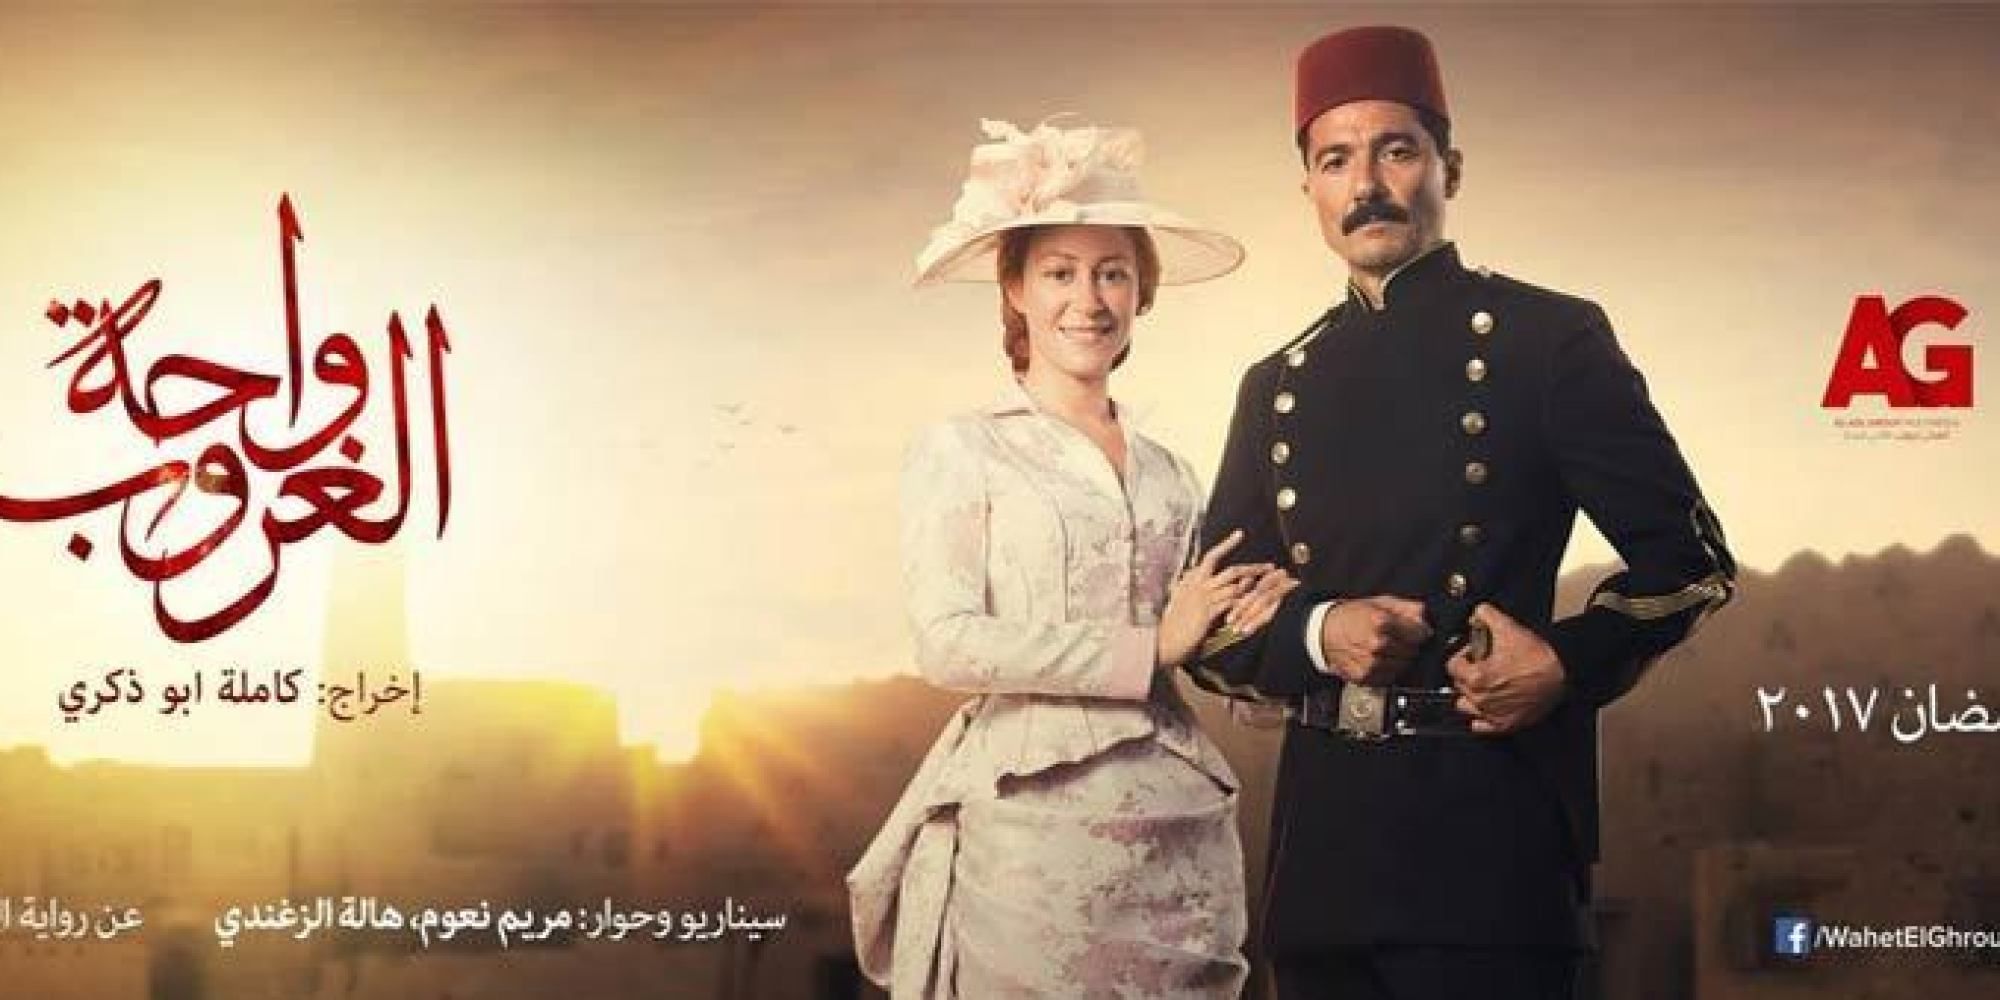 اطلالات النجمات بين الجرأة والتحضر في مسلسلات رمضان 2017